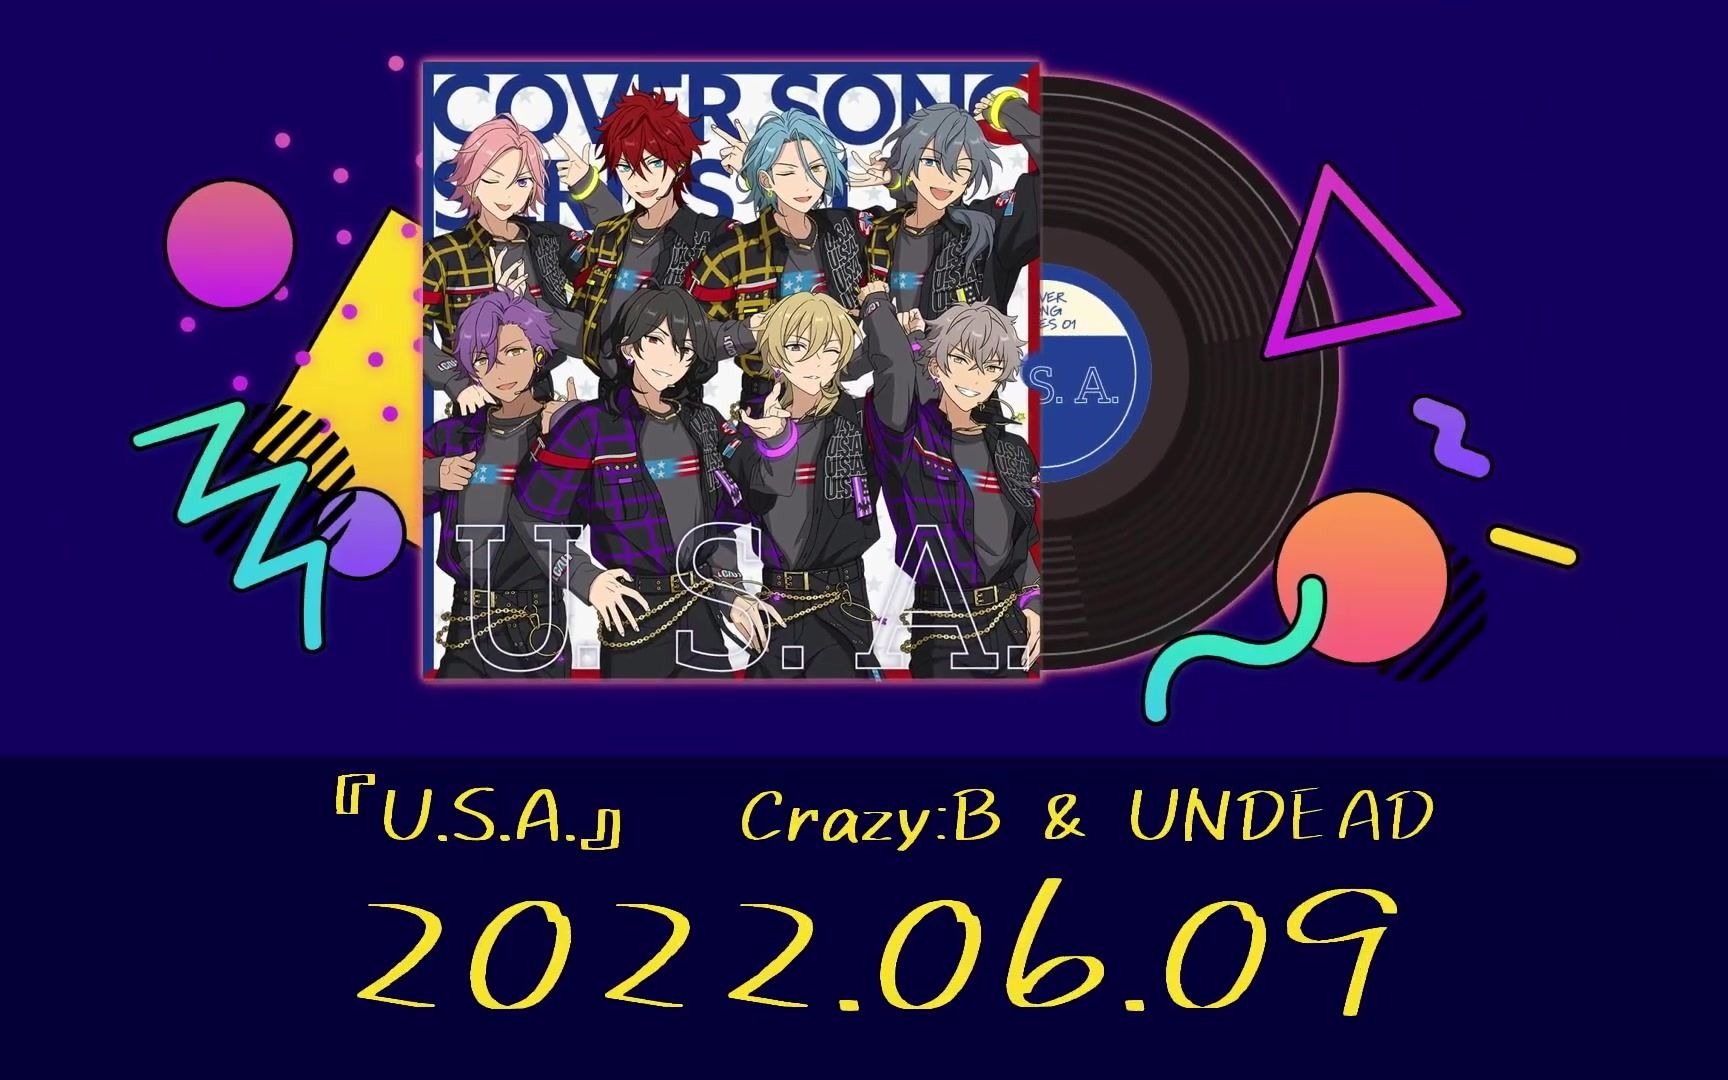 【偶像梦幻祭!!】翻唱计划COVER SONG SERIES 01『Crazy:B & UNDEAD』(翻唱内容：U.S.A.)